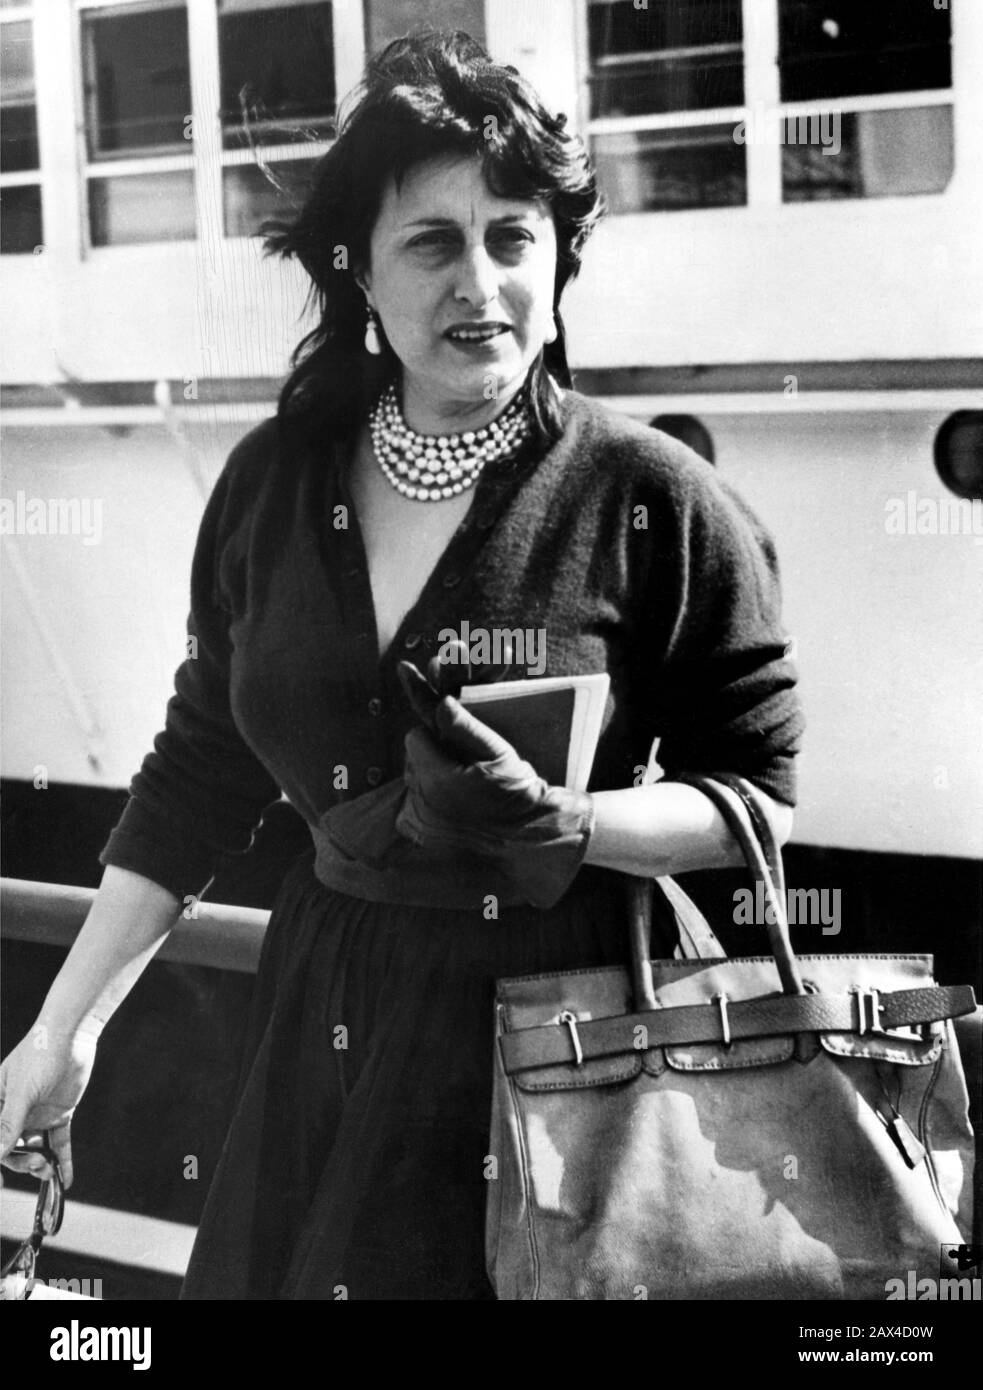 1953 , 4. april , NEAPEL , ITALIEN : Die italienische Filmschauspielerin ANNA MAGNANI, bevor sie auf dem italienischen Linienschiff ANDREA DORIA von Neapel in die USA segelte. Magnani war auf dem Weg in die USA, wo sie helfen wird, ihren neuesten Film THE GOLDEN COUCH (La carrozza d'oro - La Carosse d'Or) bekannt zu machen. Von Jean Renoir - KINO - FILM - FILM - PORTRÄT - RITRATTO - schwarzes Kleid - abito vestito nero - Perlen Halskette - Collana di perle - Handschuhe - Guanti - borsa - Borsetta - sac - Tasche - orecchini - Ohrtropfen - TRANSATLANTICO -- - NUR REDAKTIONELLE VERWENDUNG --- NICHT FÜR WERBEZWECKE --- NICHT PRO USO PUBBLICITARIO -- ARCHIVI Stockfoto